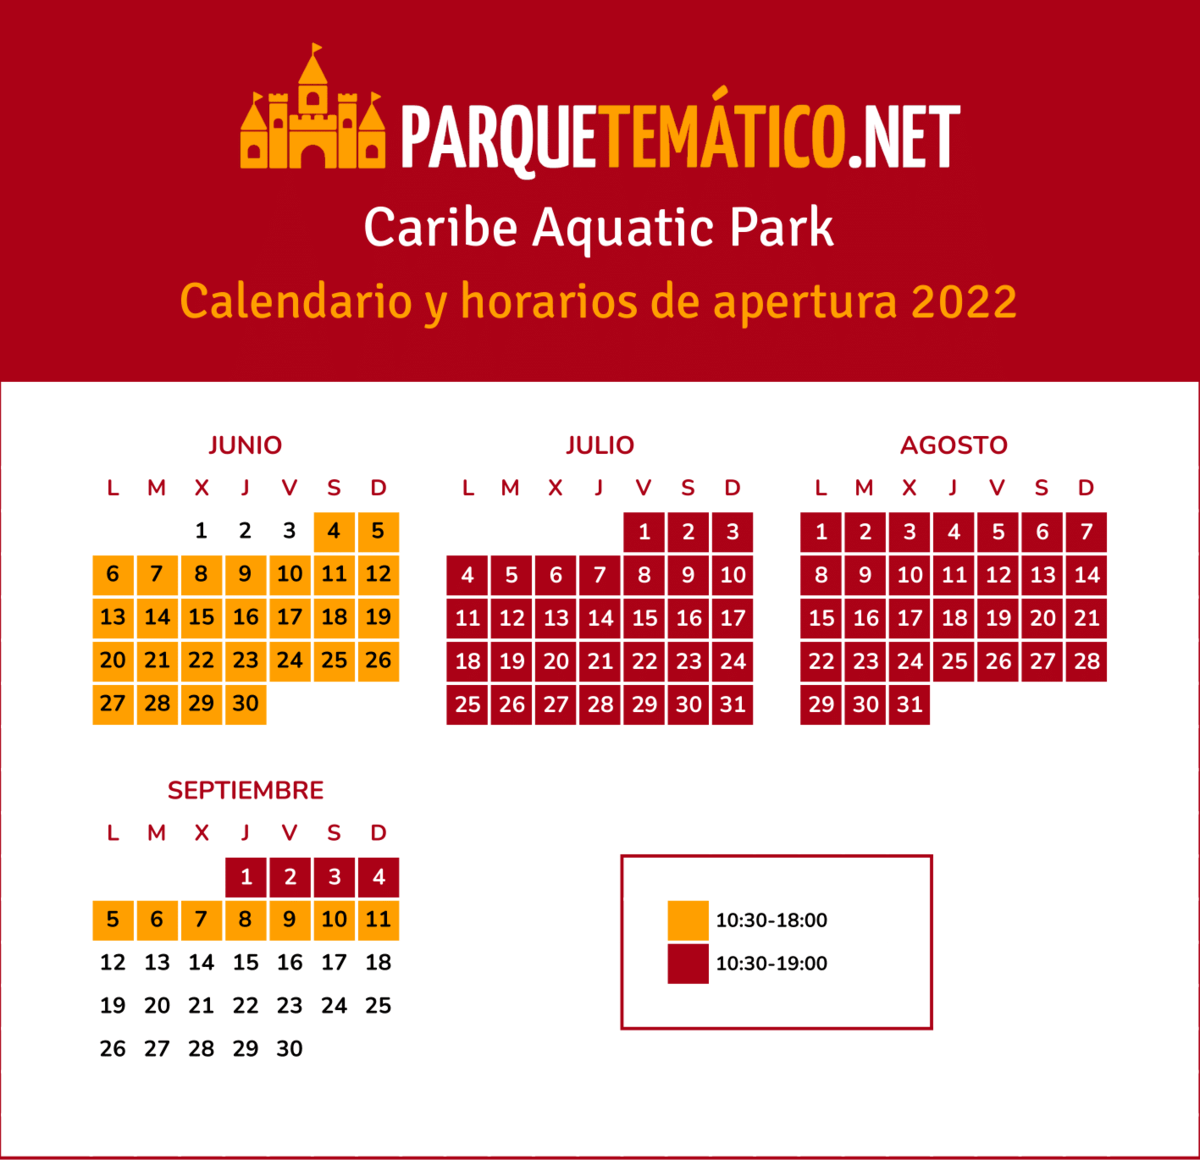 Calendario y horarios de apertura de Caribe Aquatic Park en 2022 v2